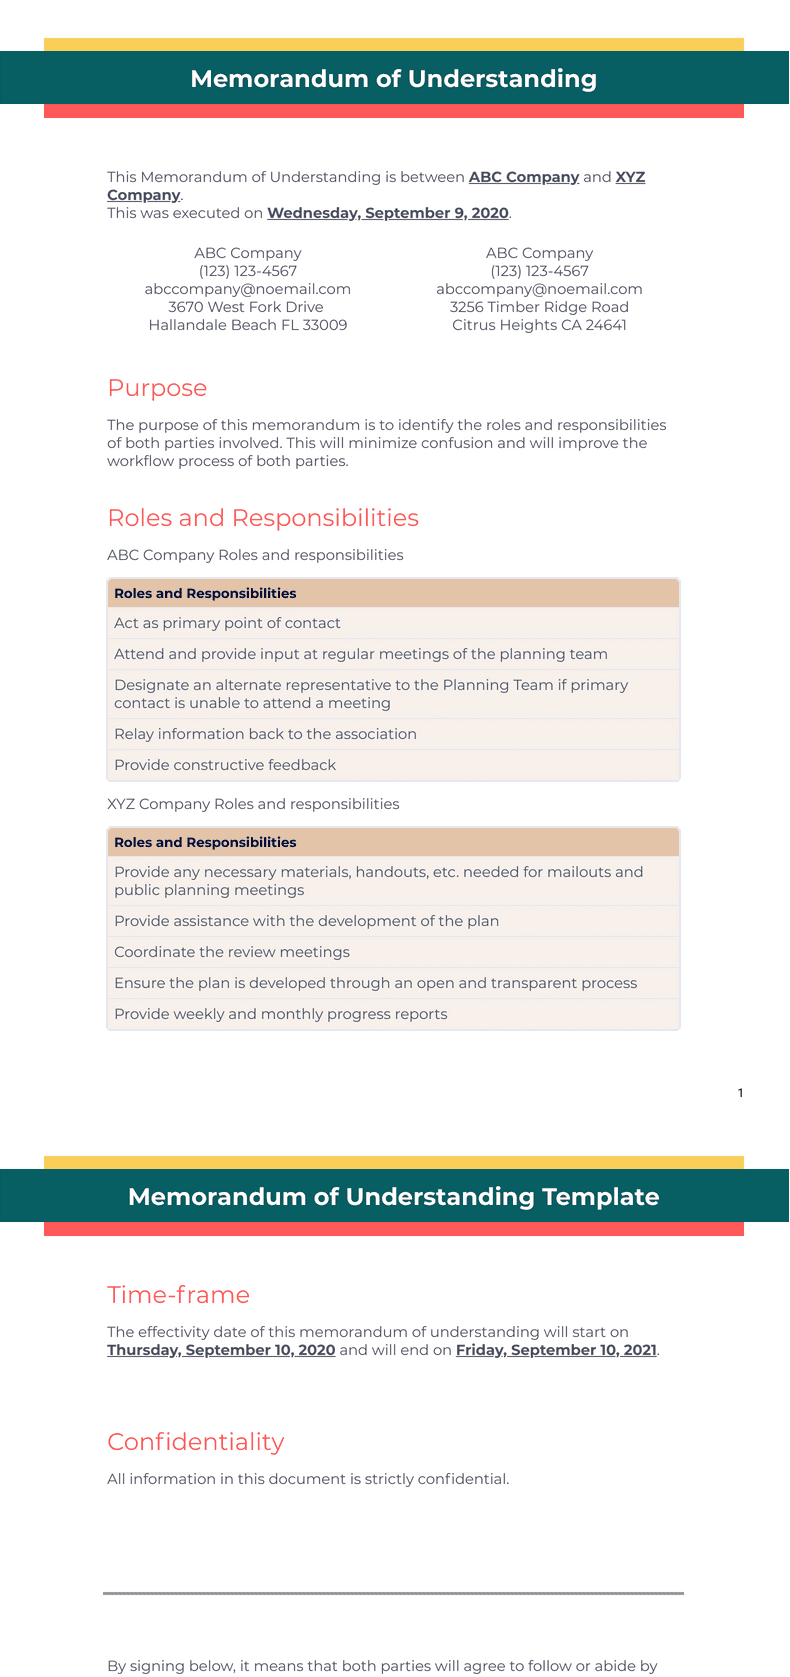 Memorandum of Understanding Template